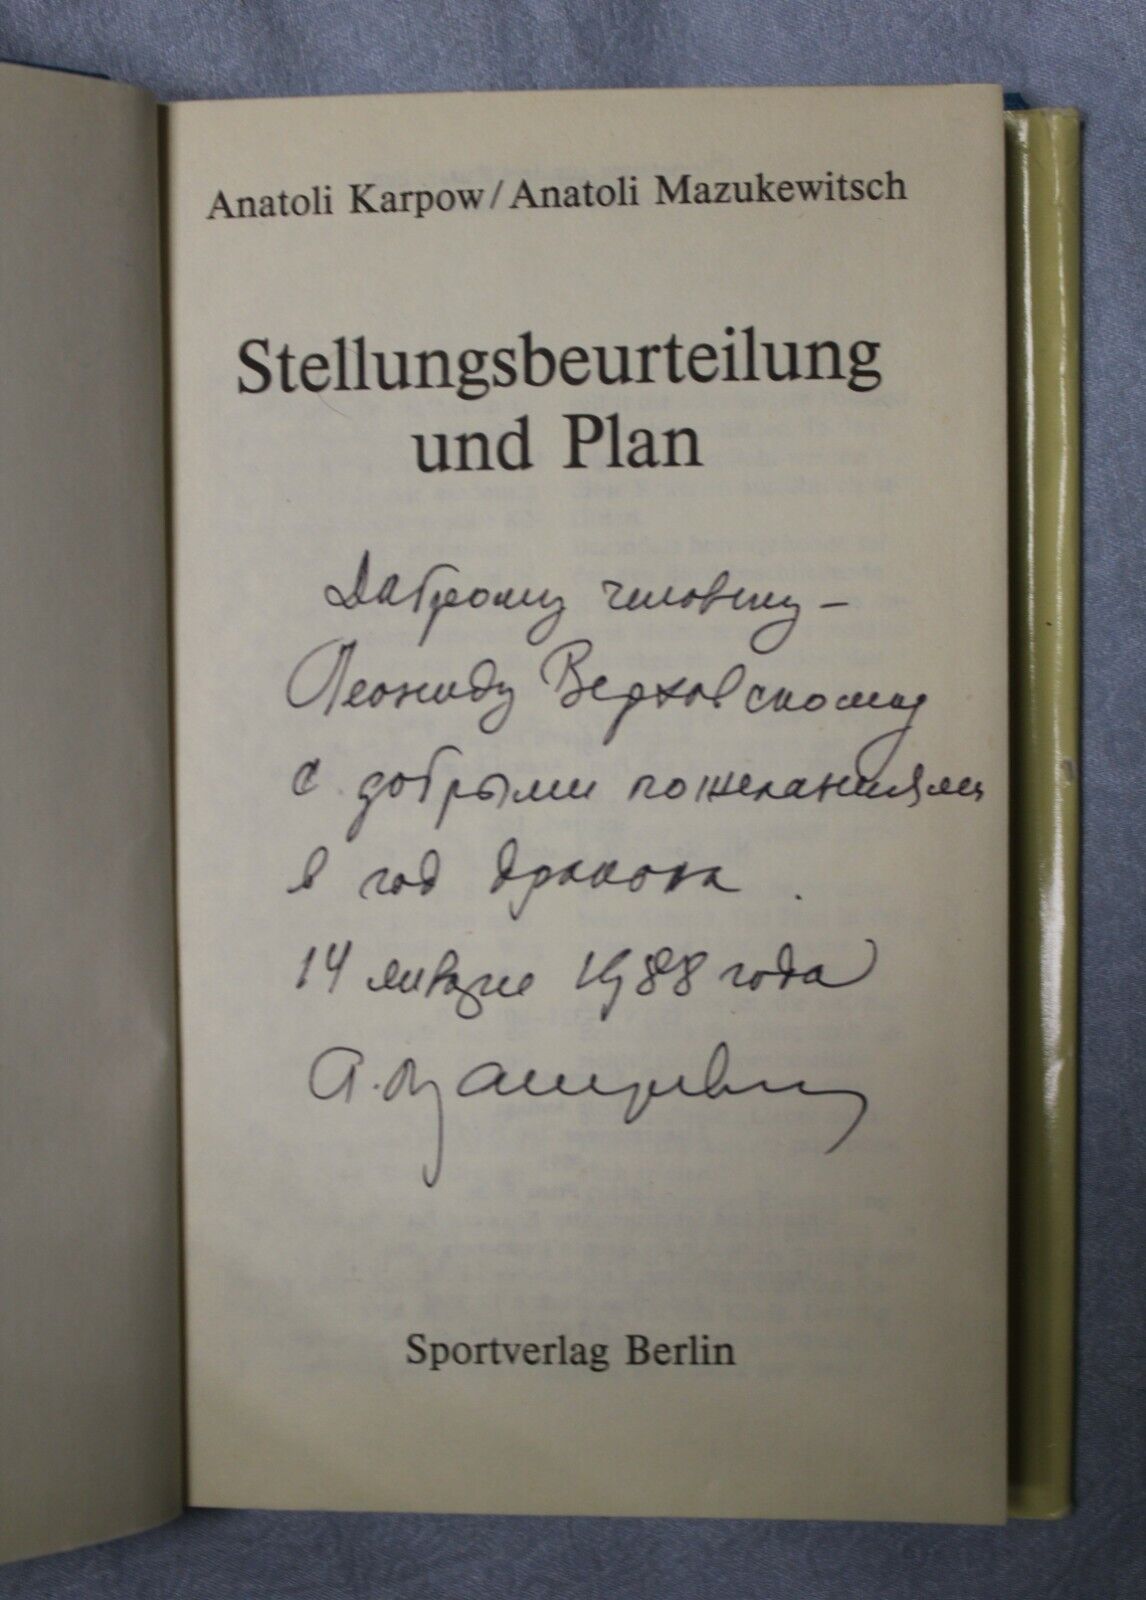 11127.Chess book: signed Verhovsky, Karpow, Mazukewitsch stellungsbeurteilung, 1986